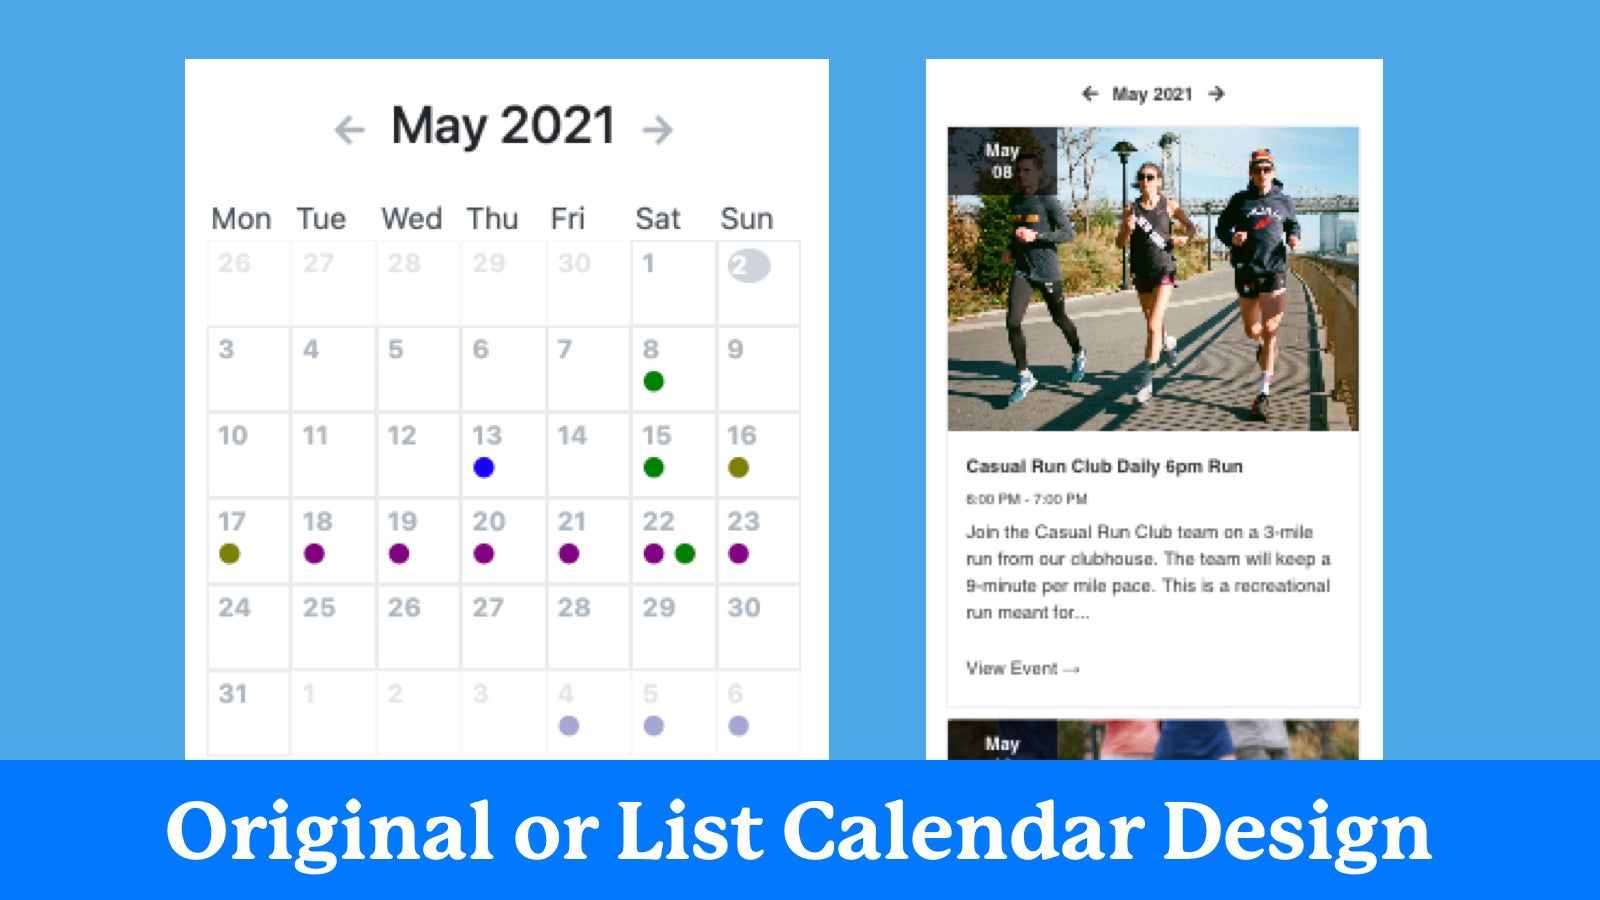 Original or list calendar design options